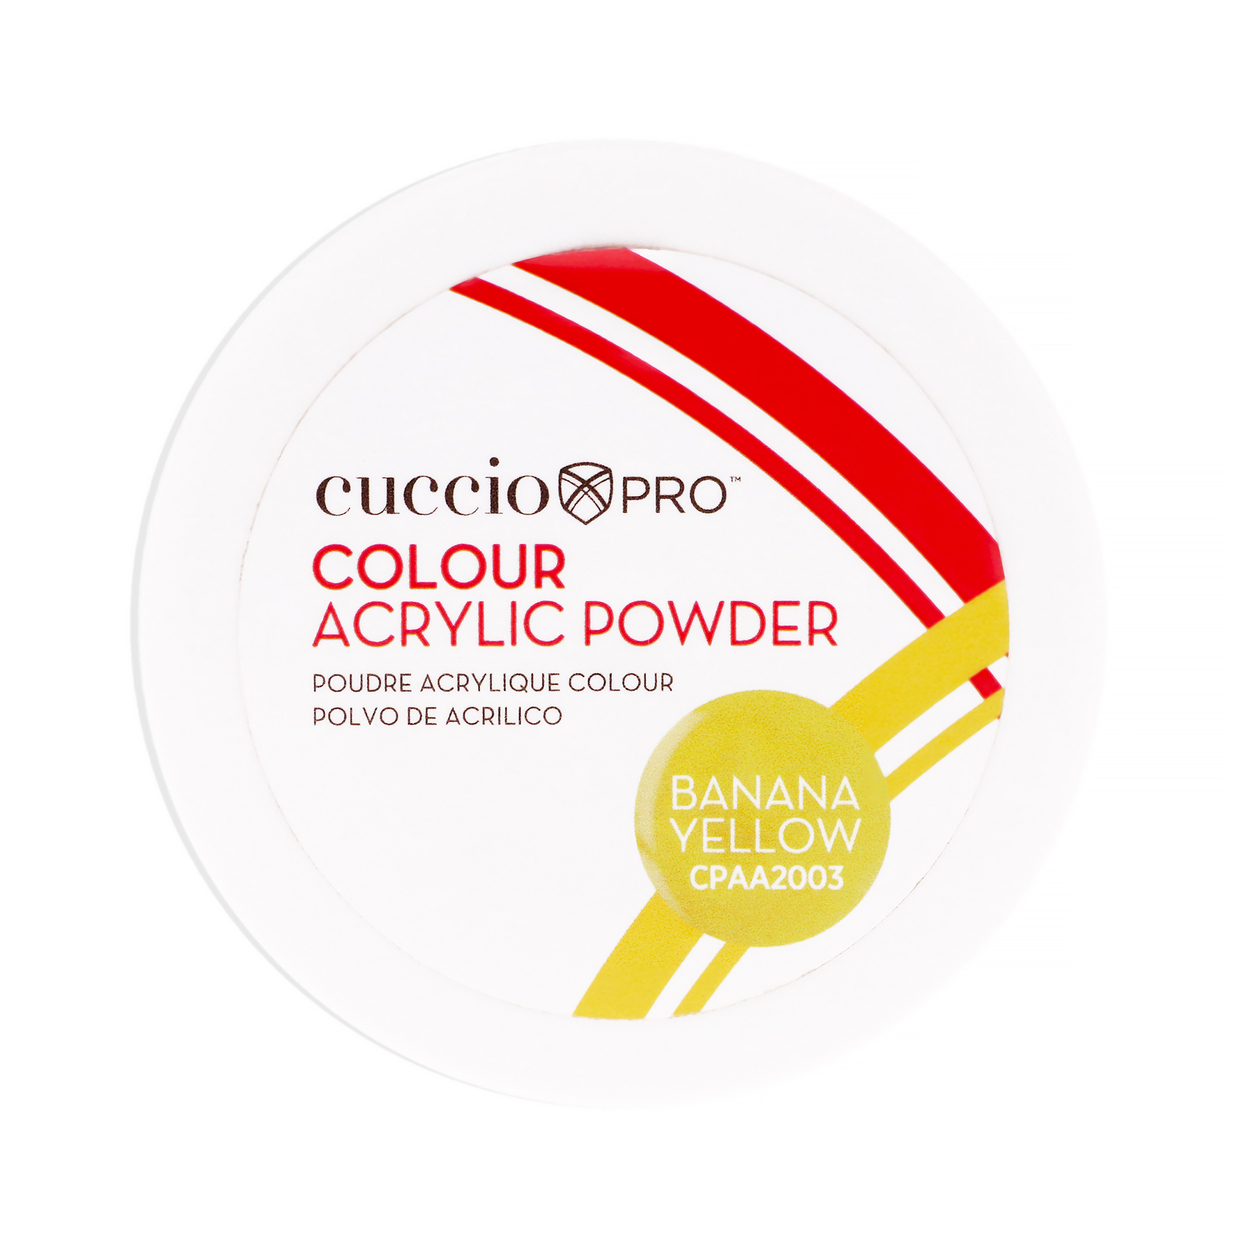 Cuccio PRO Colour Acrylic Powder - Banana Yellow 1.6 Oz